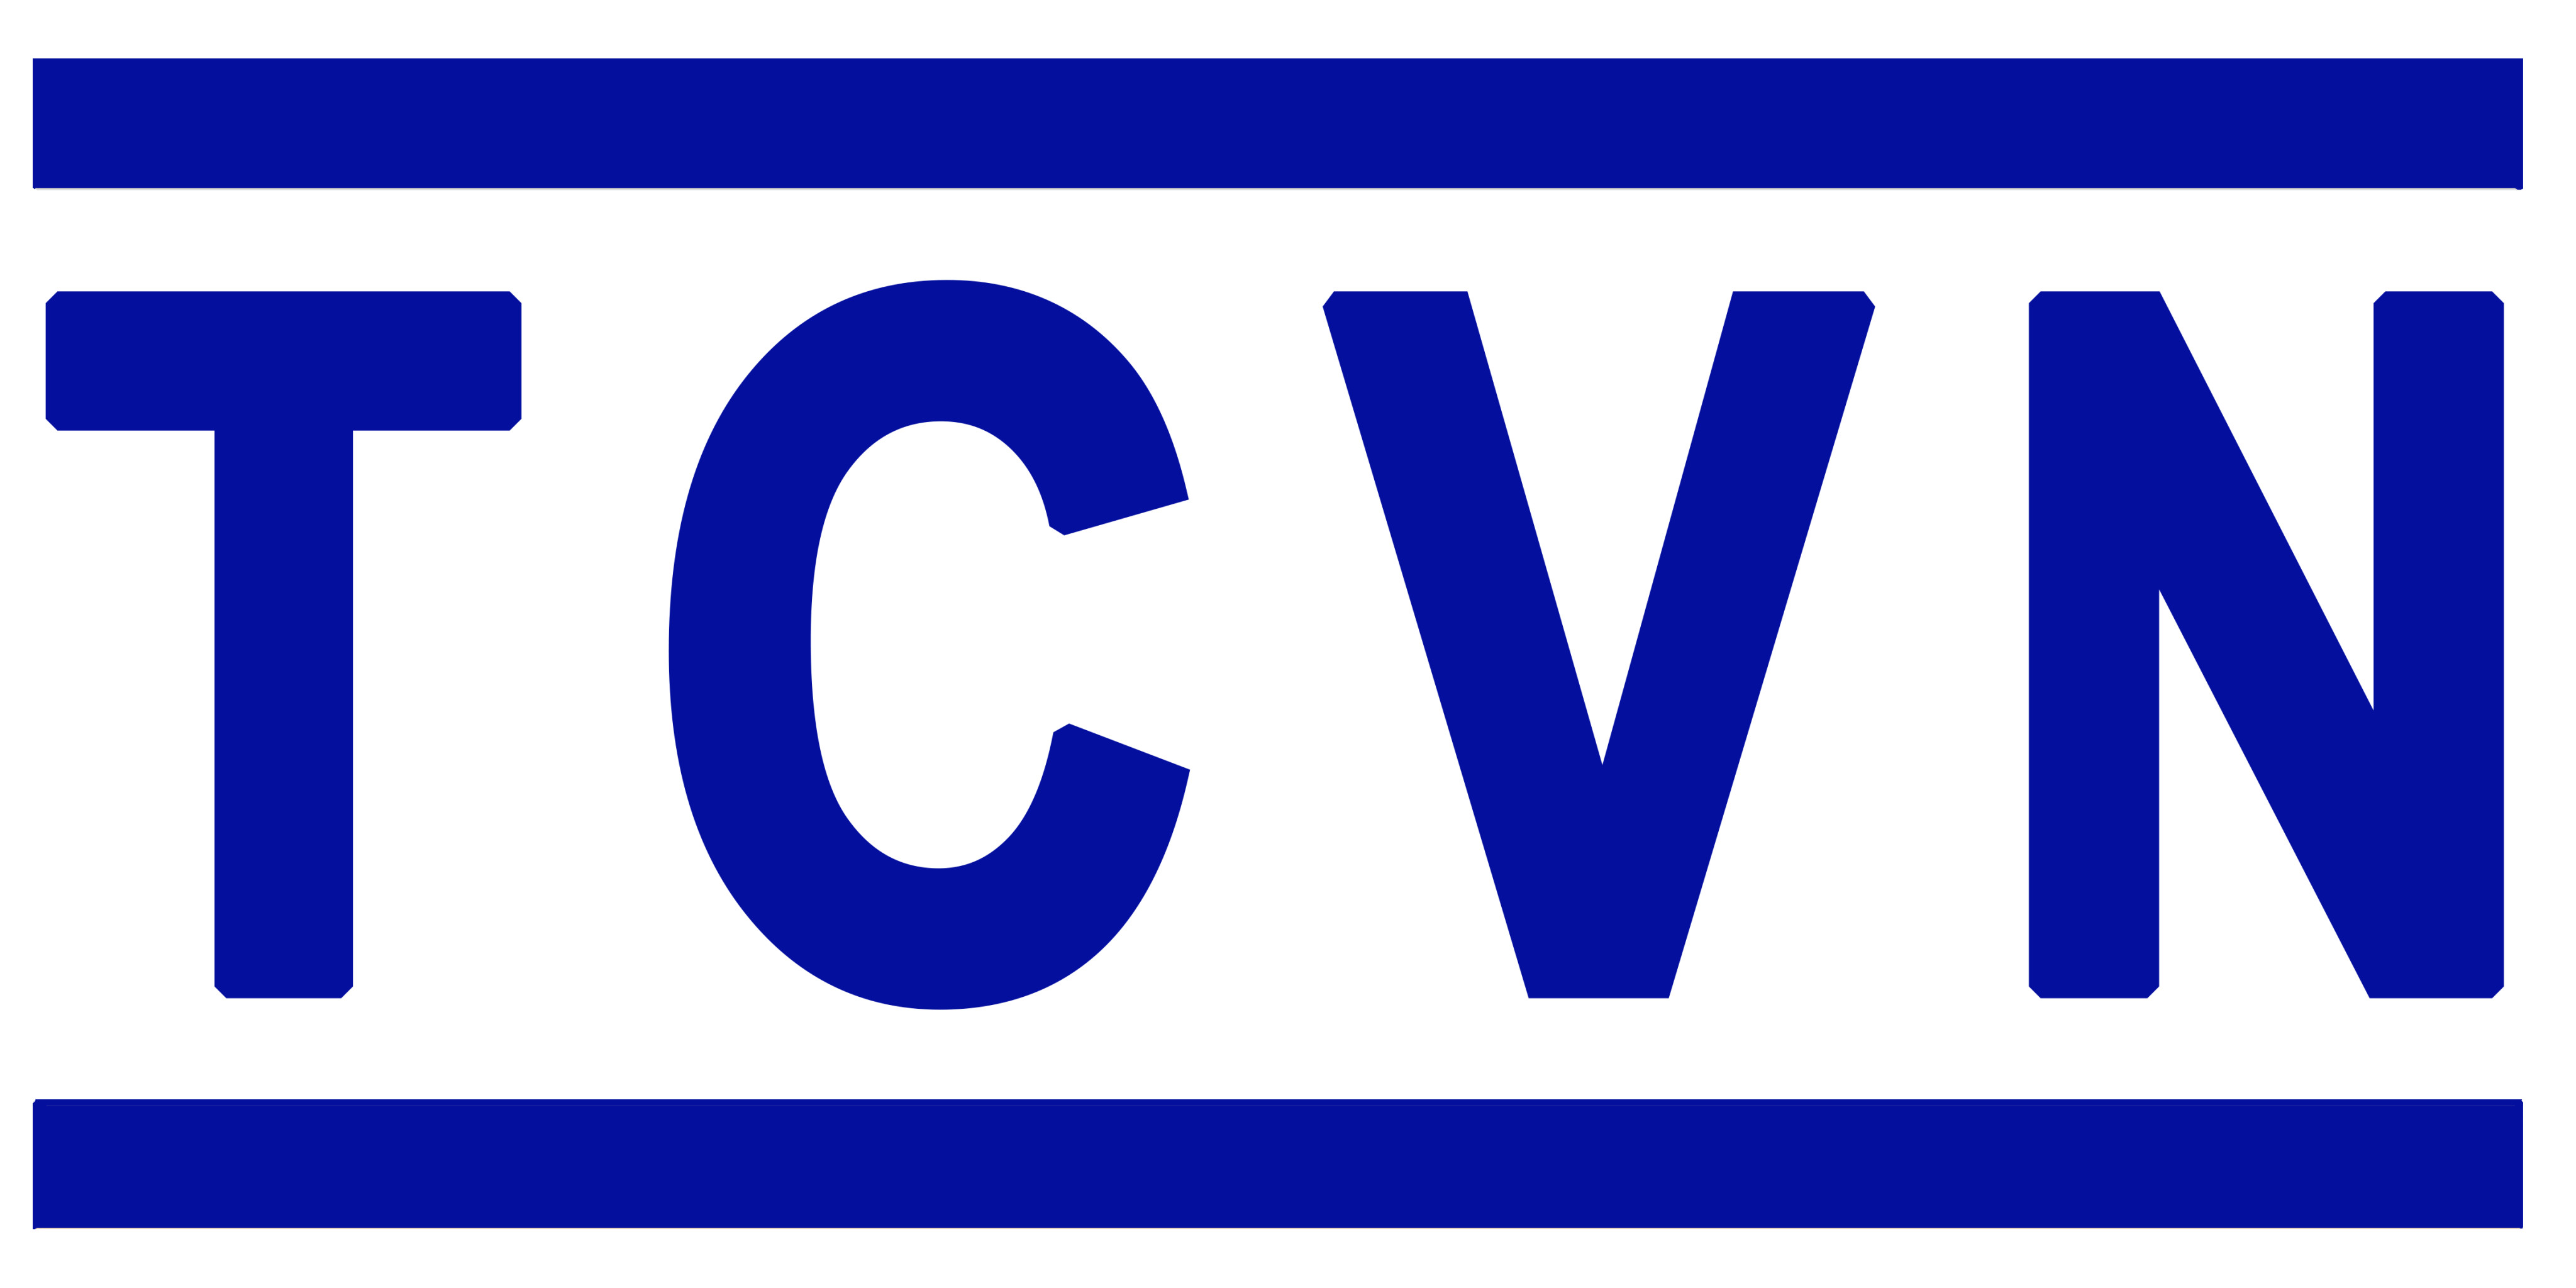 Danh mục tiêu chuẩn Quốc Gia (TCVN) công bố tháng 2 năm 2020